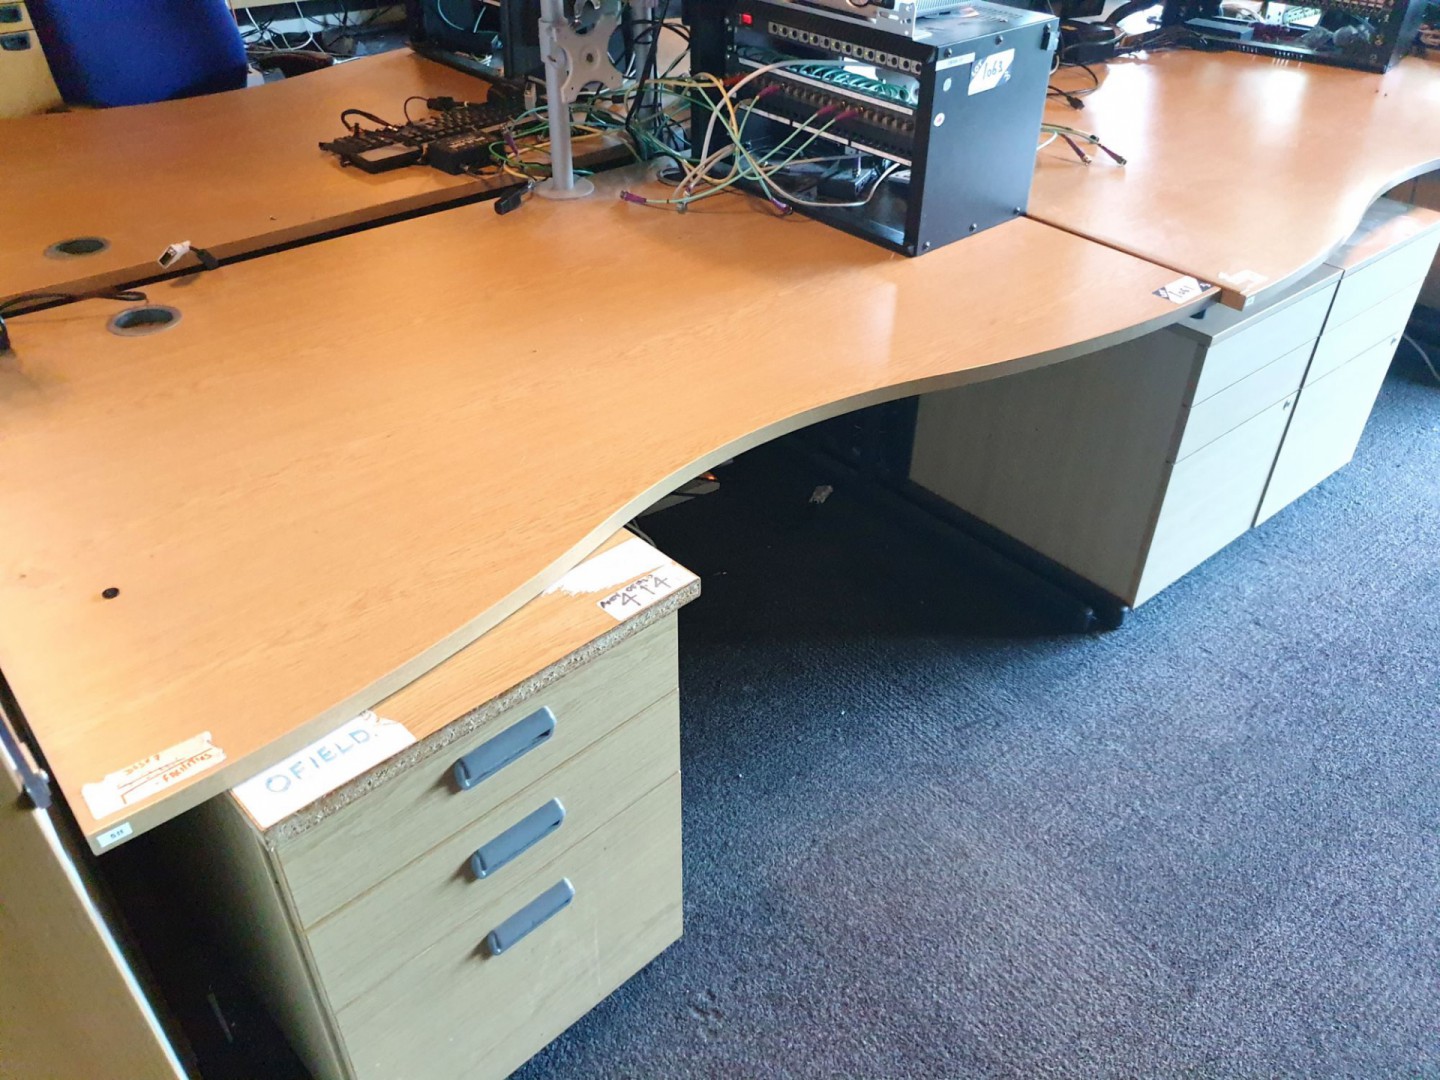 AMEND: Should Read '3x light oak wavey office desk...